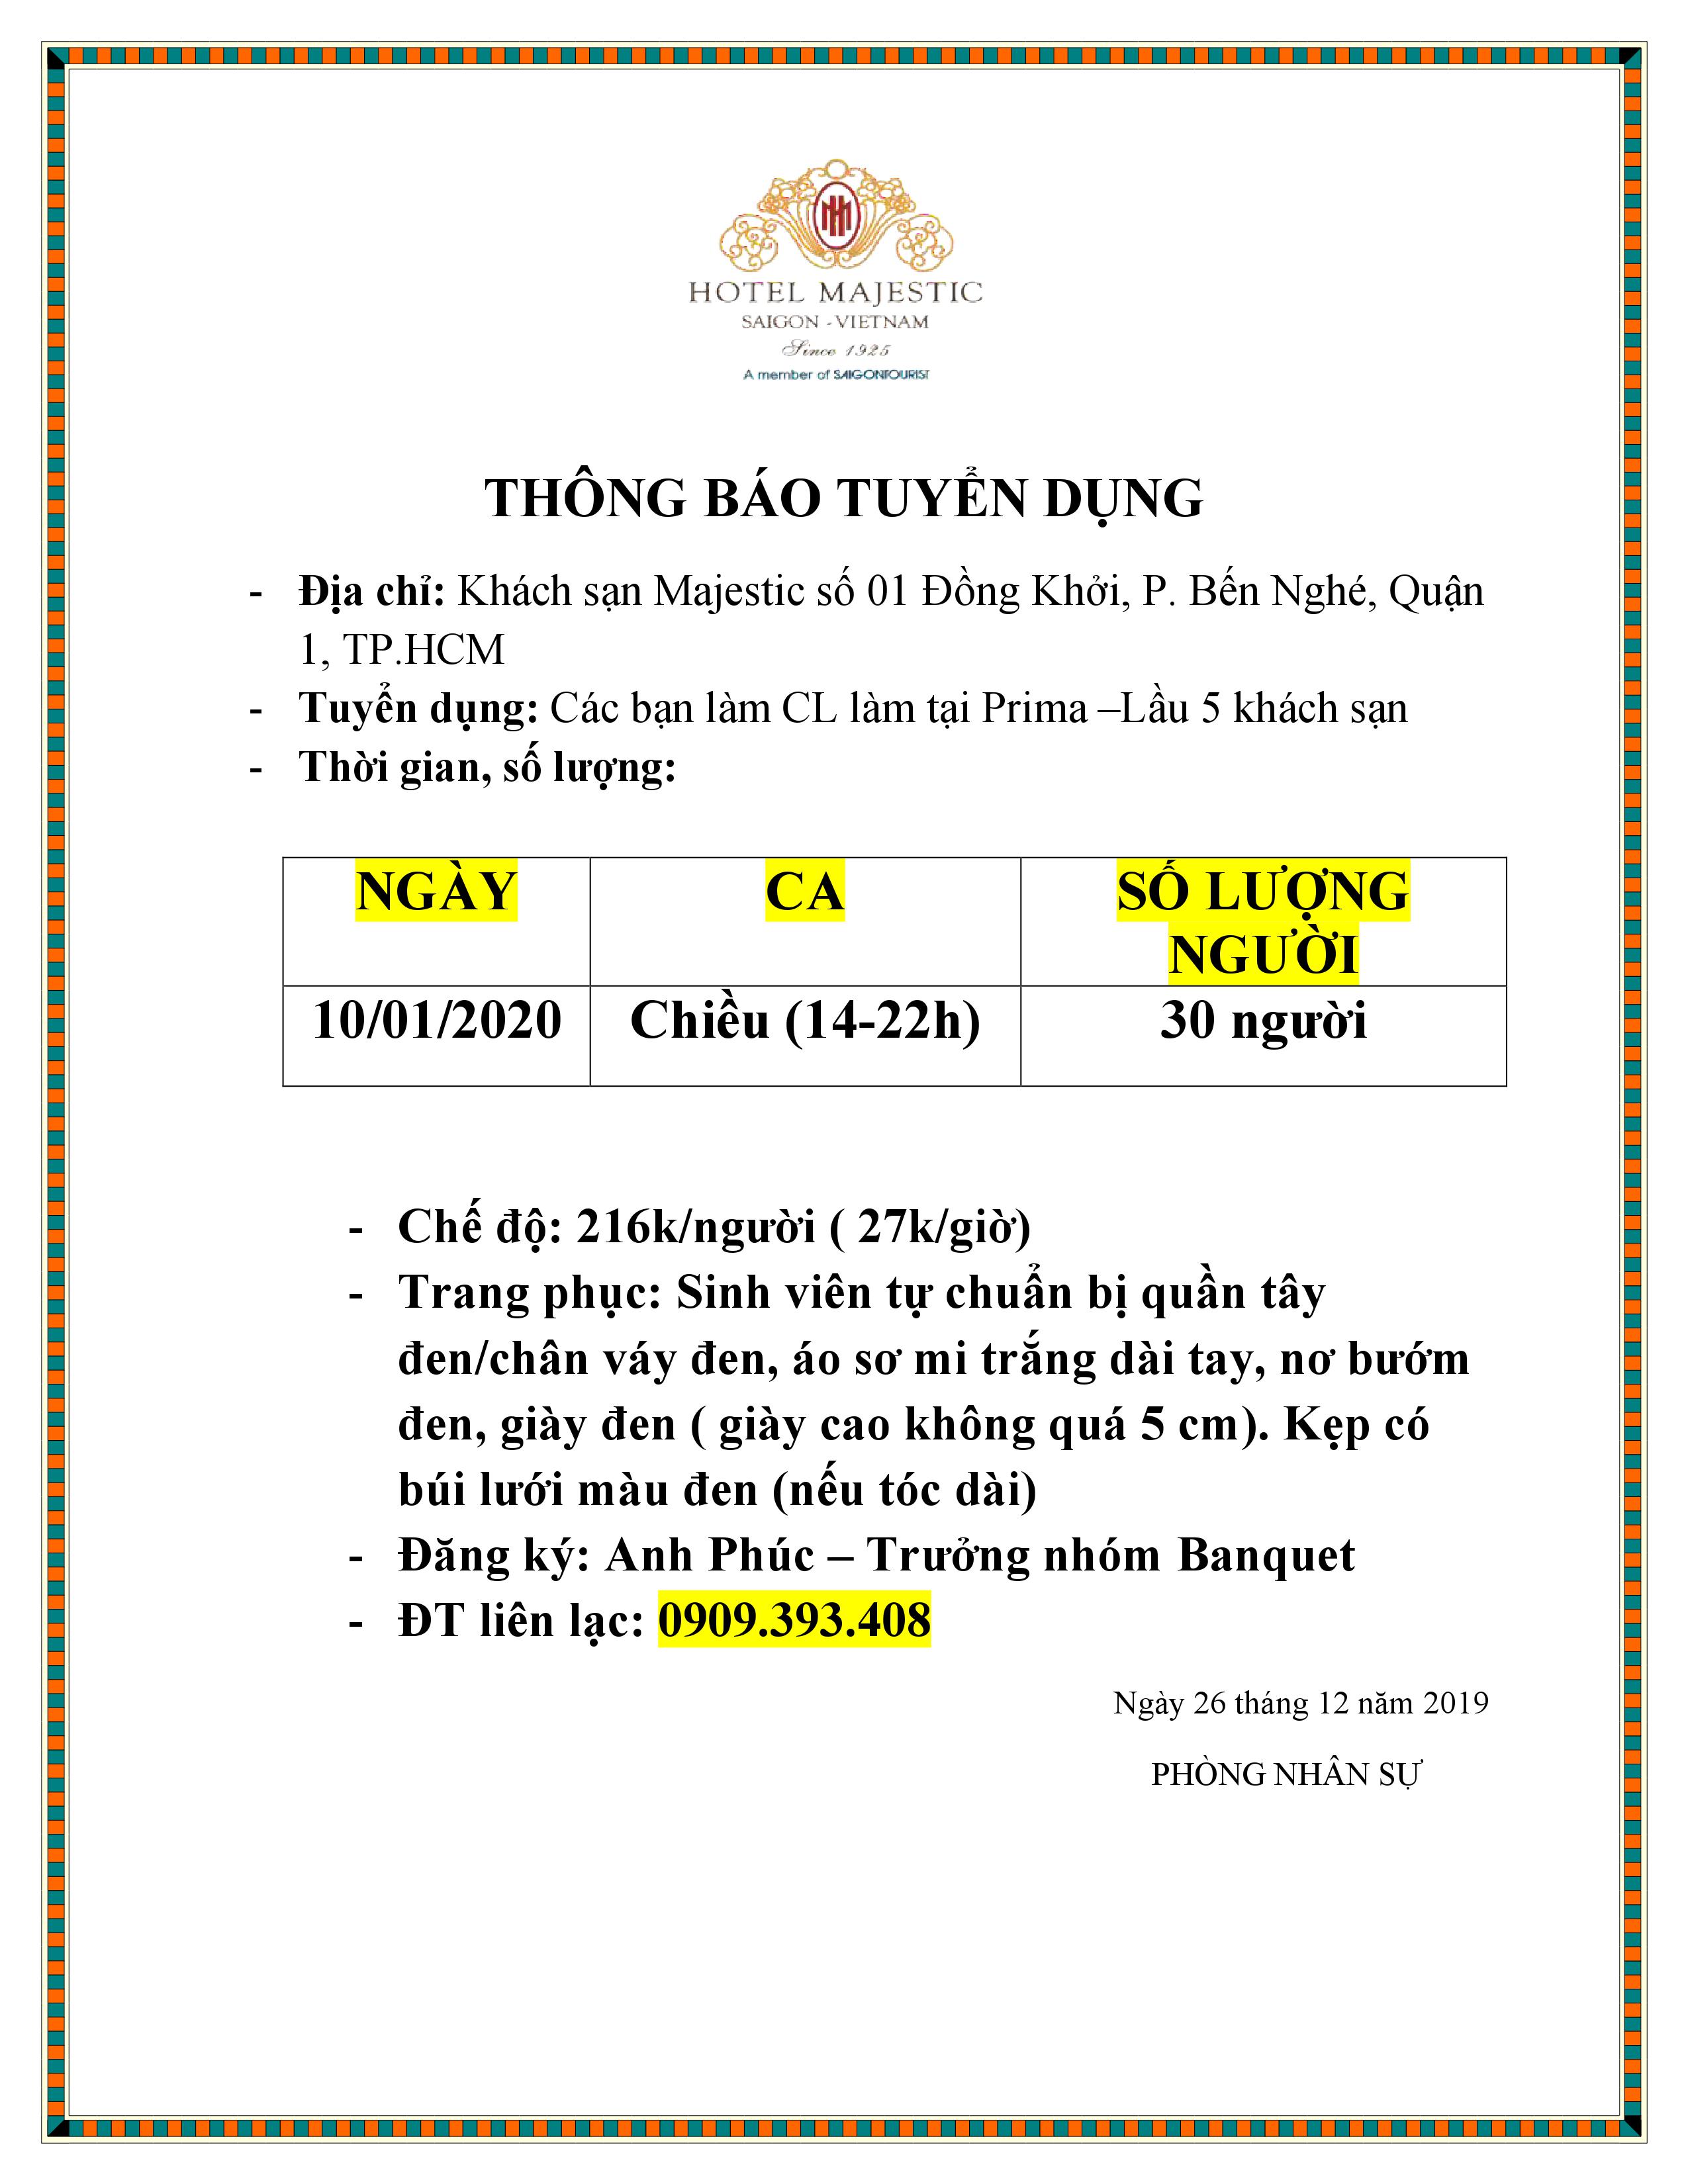 Hotel Majestic Saigon tuyển dụng CL ngày 10/01/2020 2